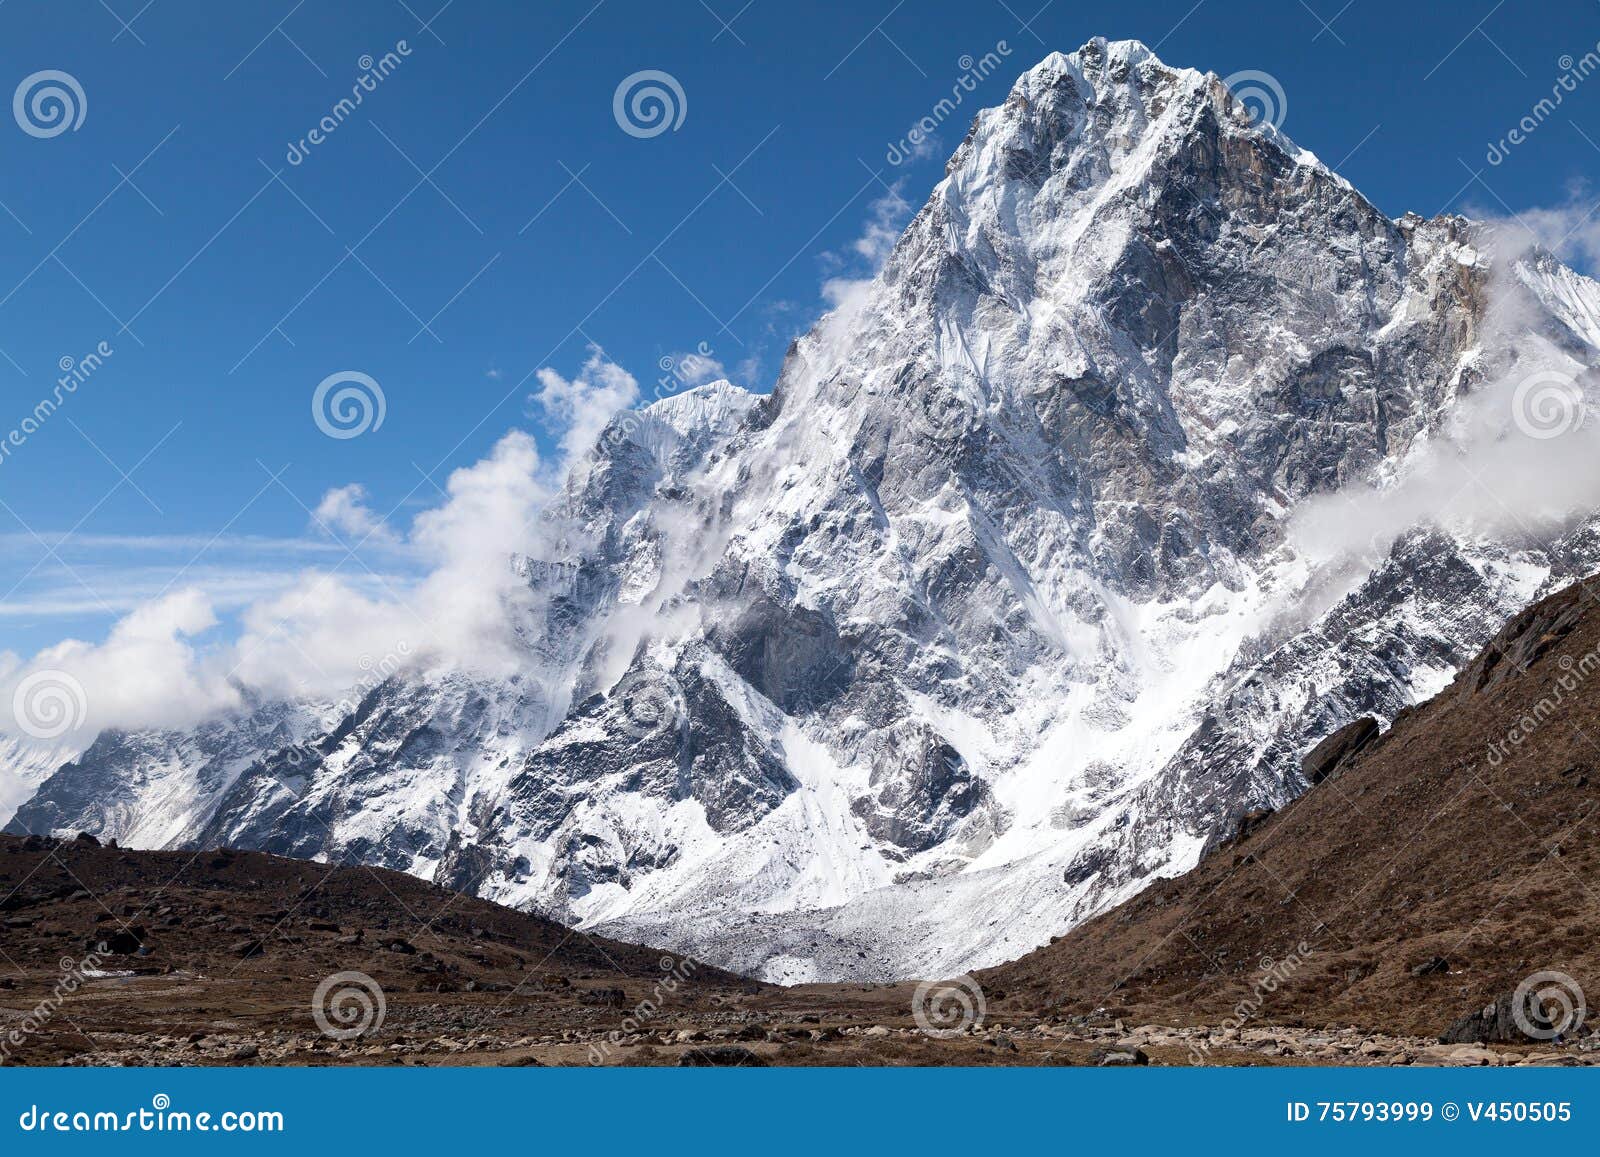 view of cholatse peak from route to cho la pass, solu khumbu, nepal